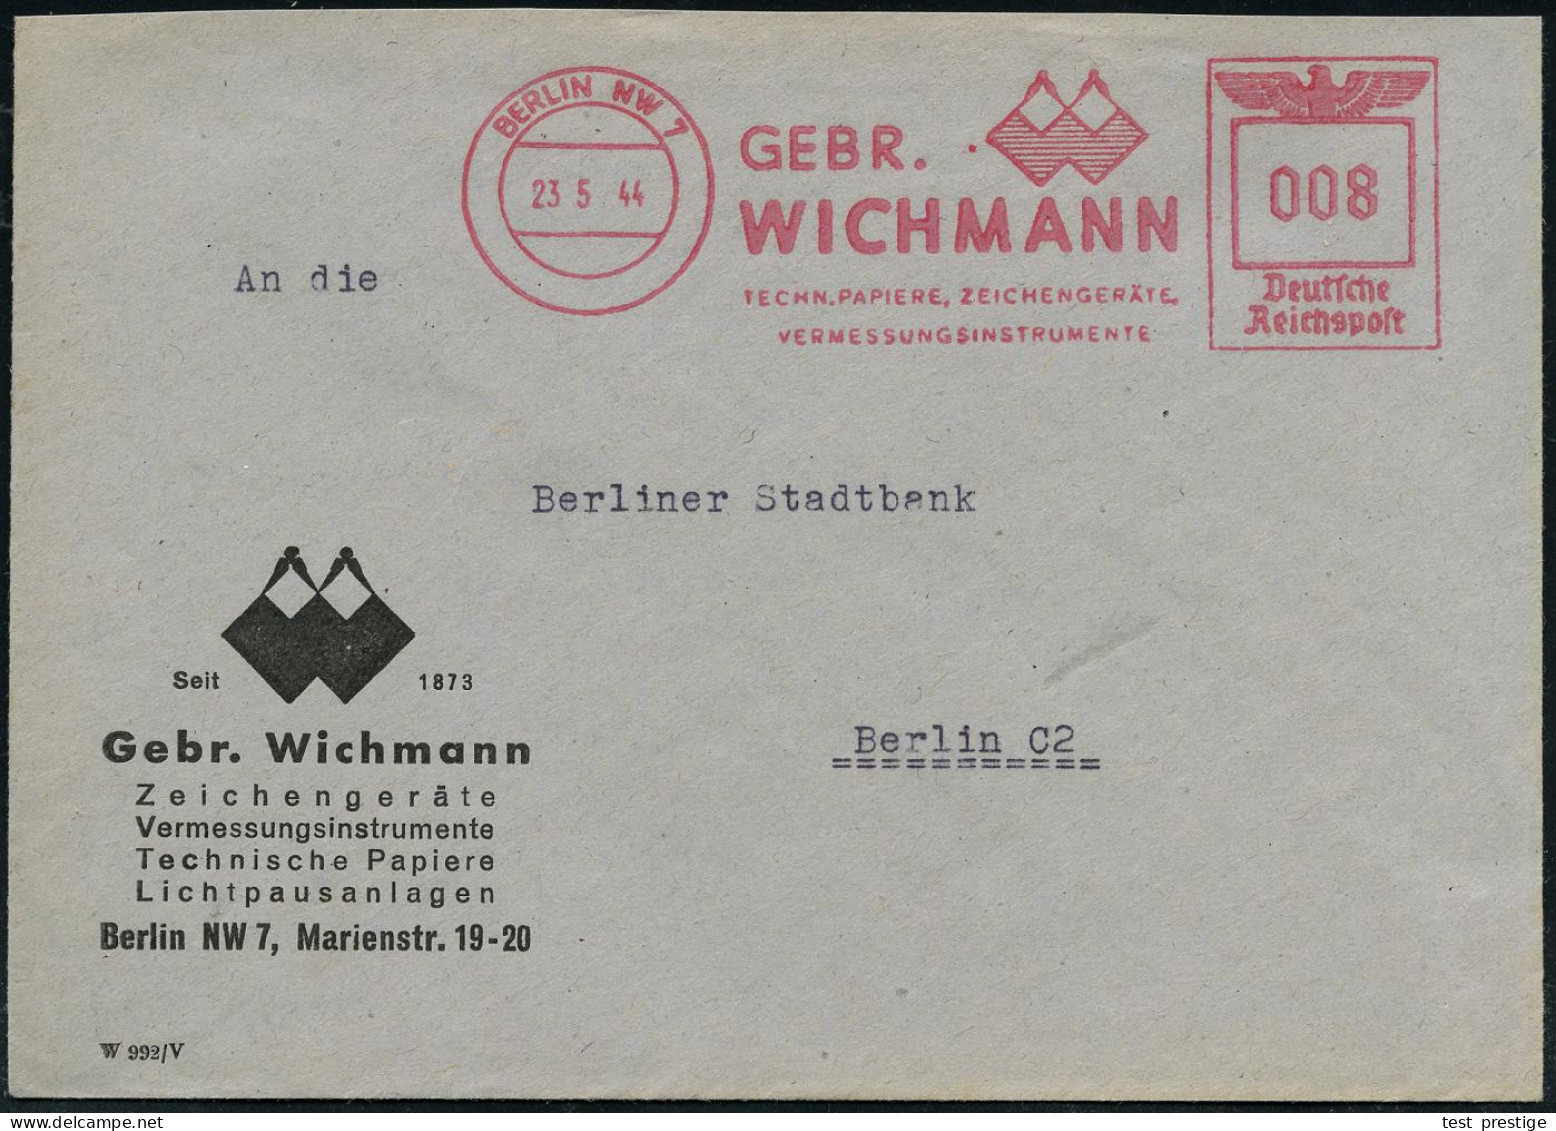 BERLIN NW7/ GEBR./ WICHMANN/ TECHN.PAPIERE, ZEICHENGERÄTE/ VERMESSUNGSINSTRUMENTE 1944 (25.5.) AFS Francotyp "Reichsadle - Geografía